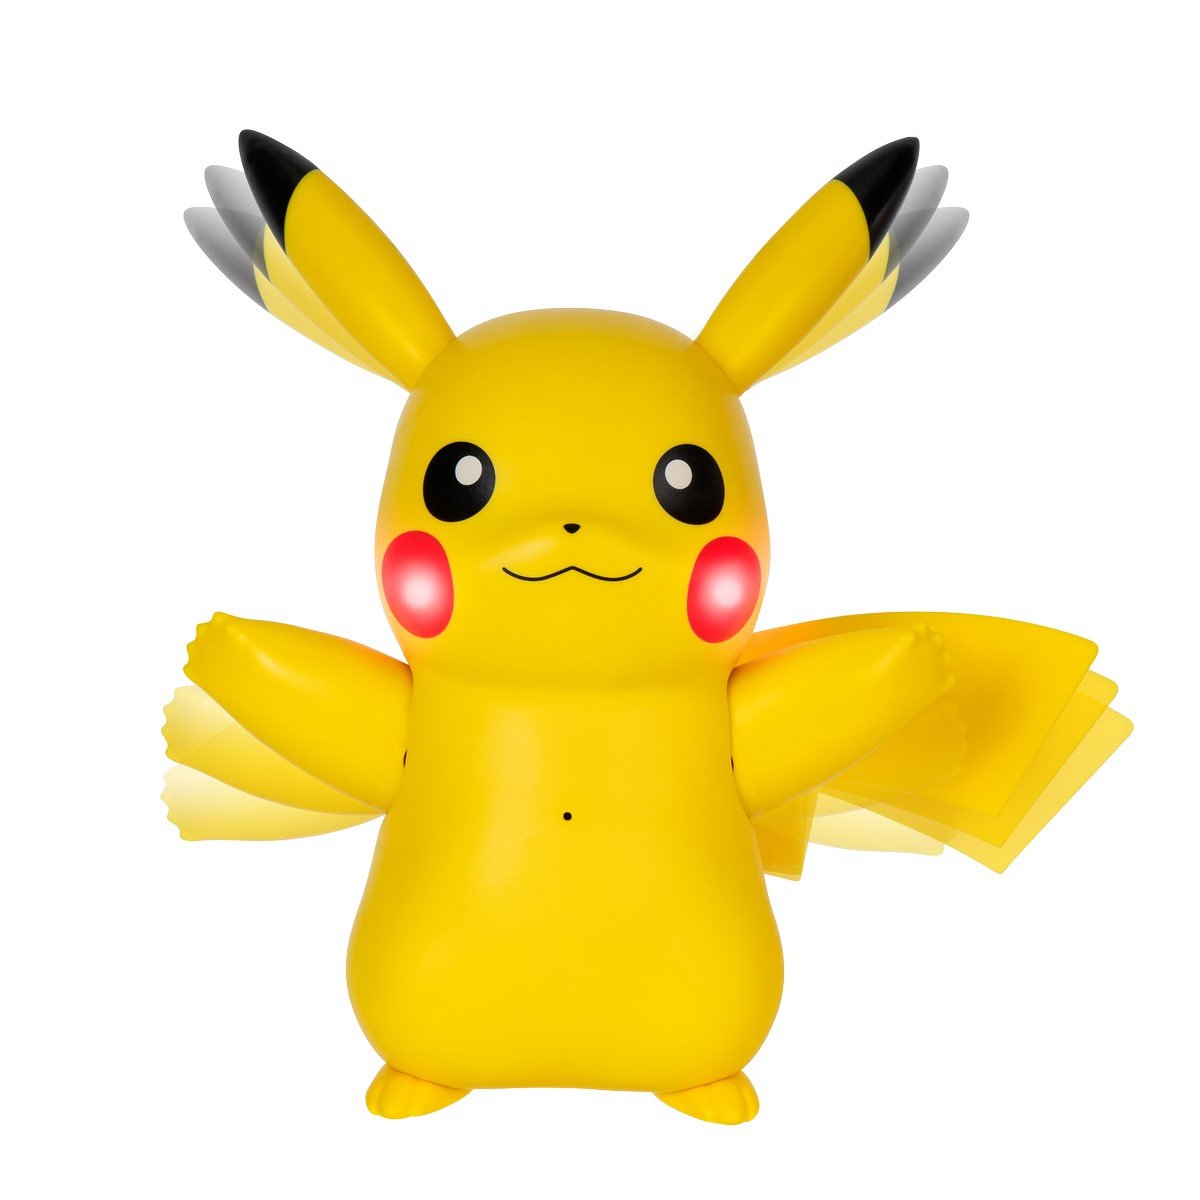 Pikachu interactif et accessoires - Pokémon - La Grande Récré